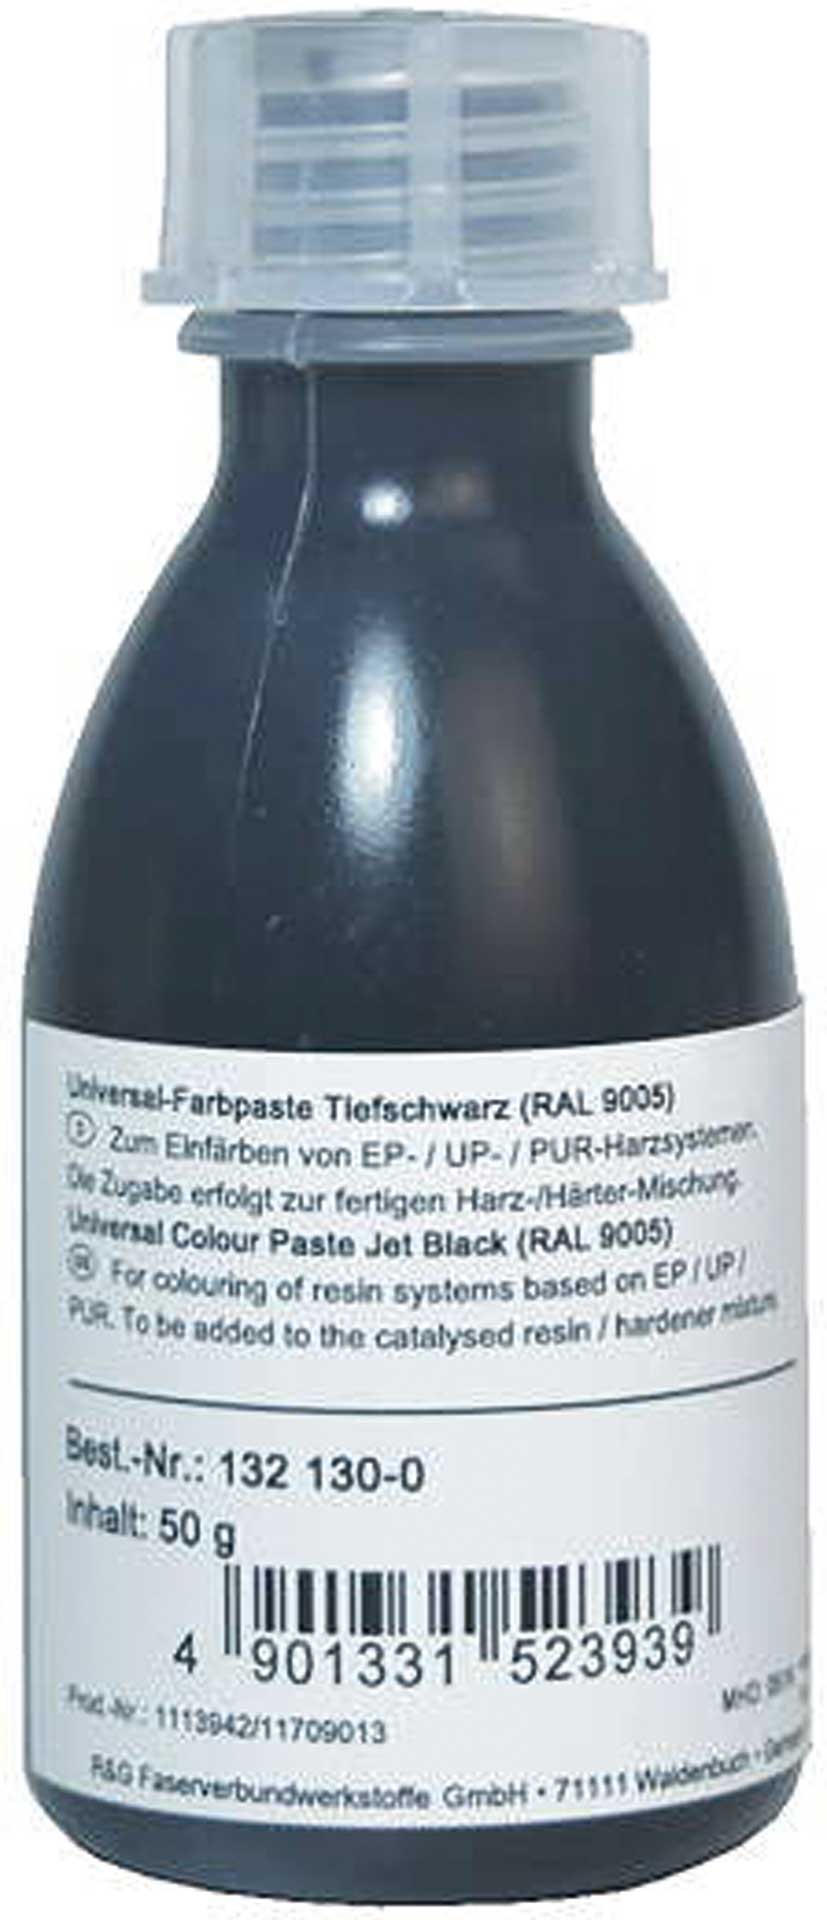 R&G Pâte de couleur universelle noir profond (RAL 9005) dose / 1 kg